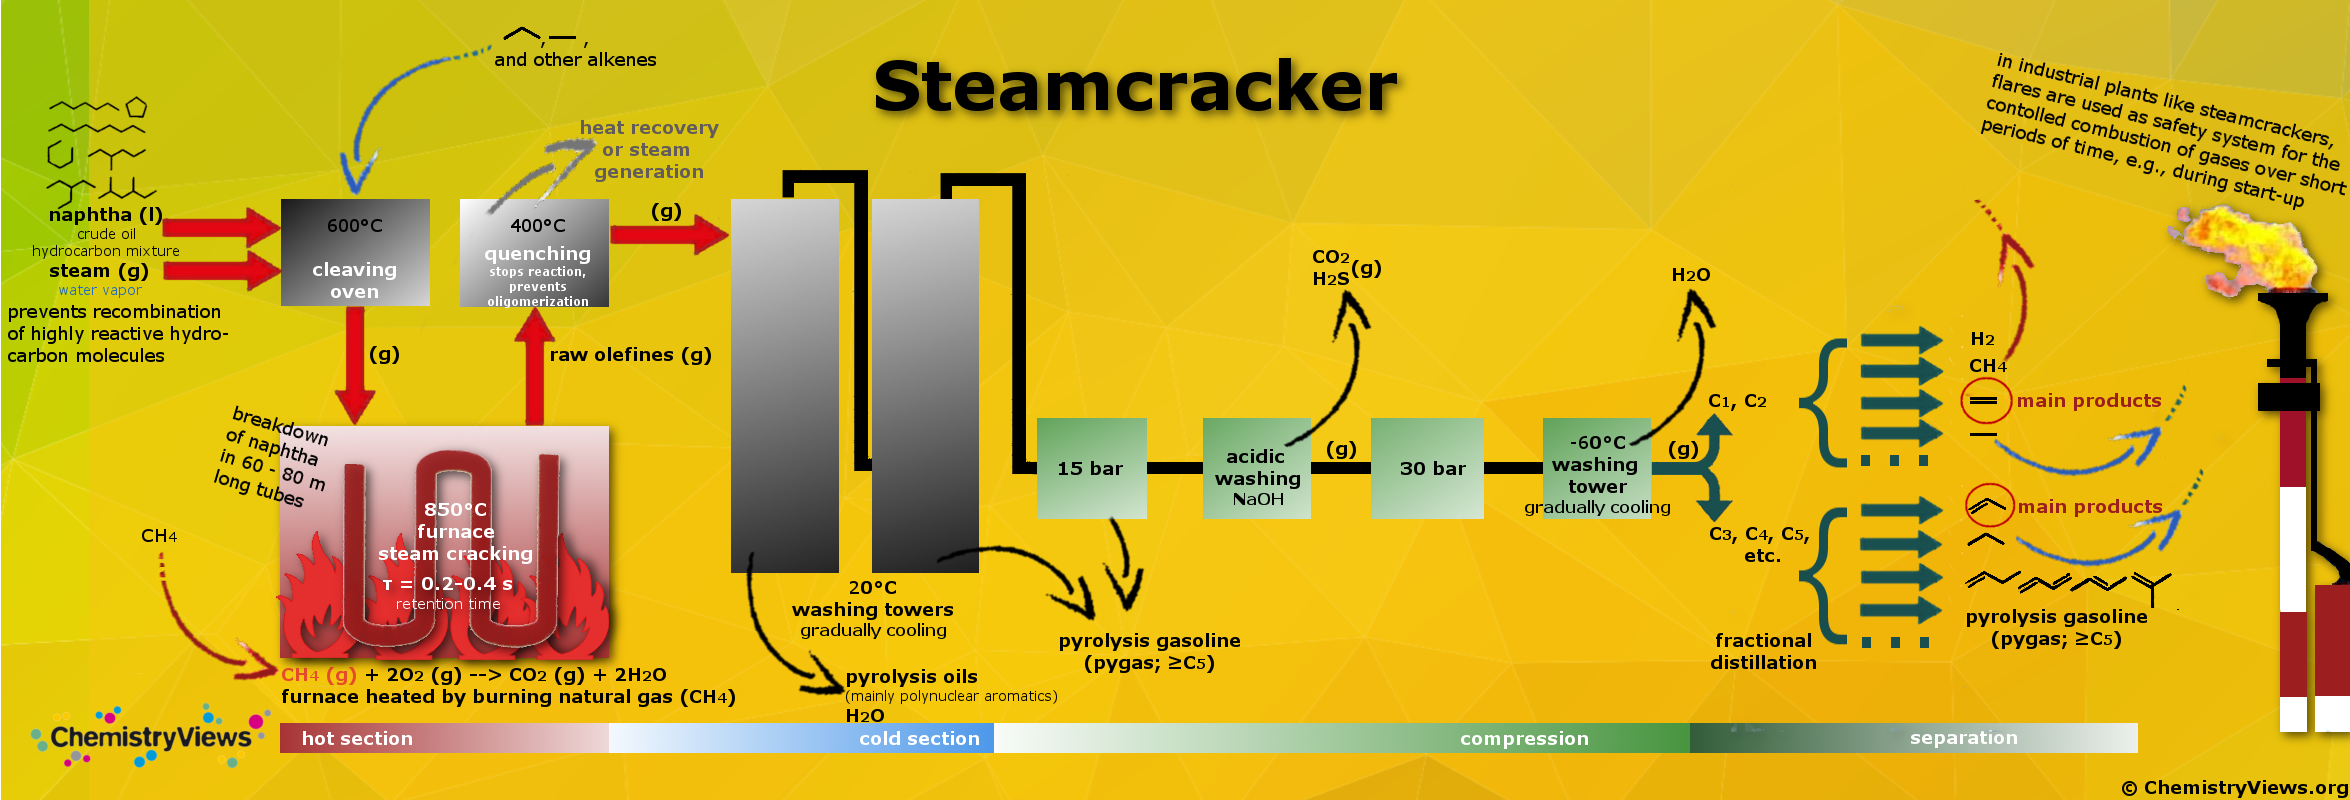 ChemistryViews steam cracker